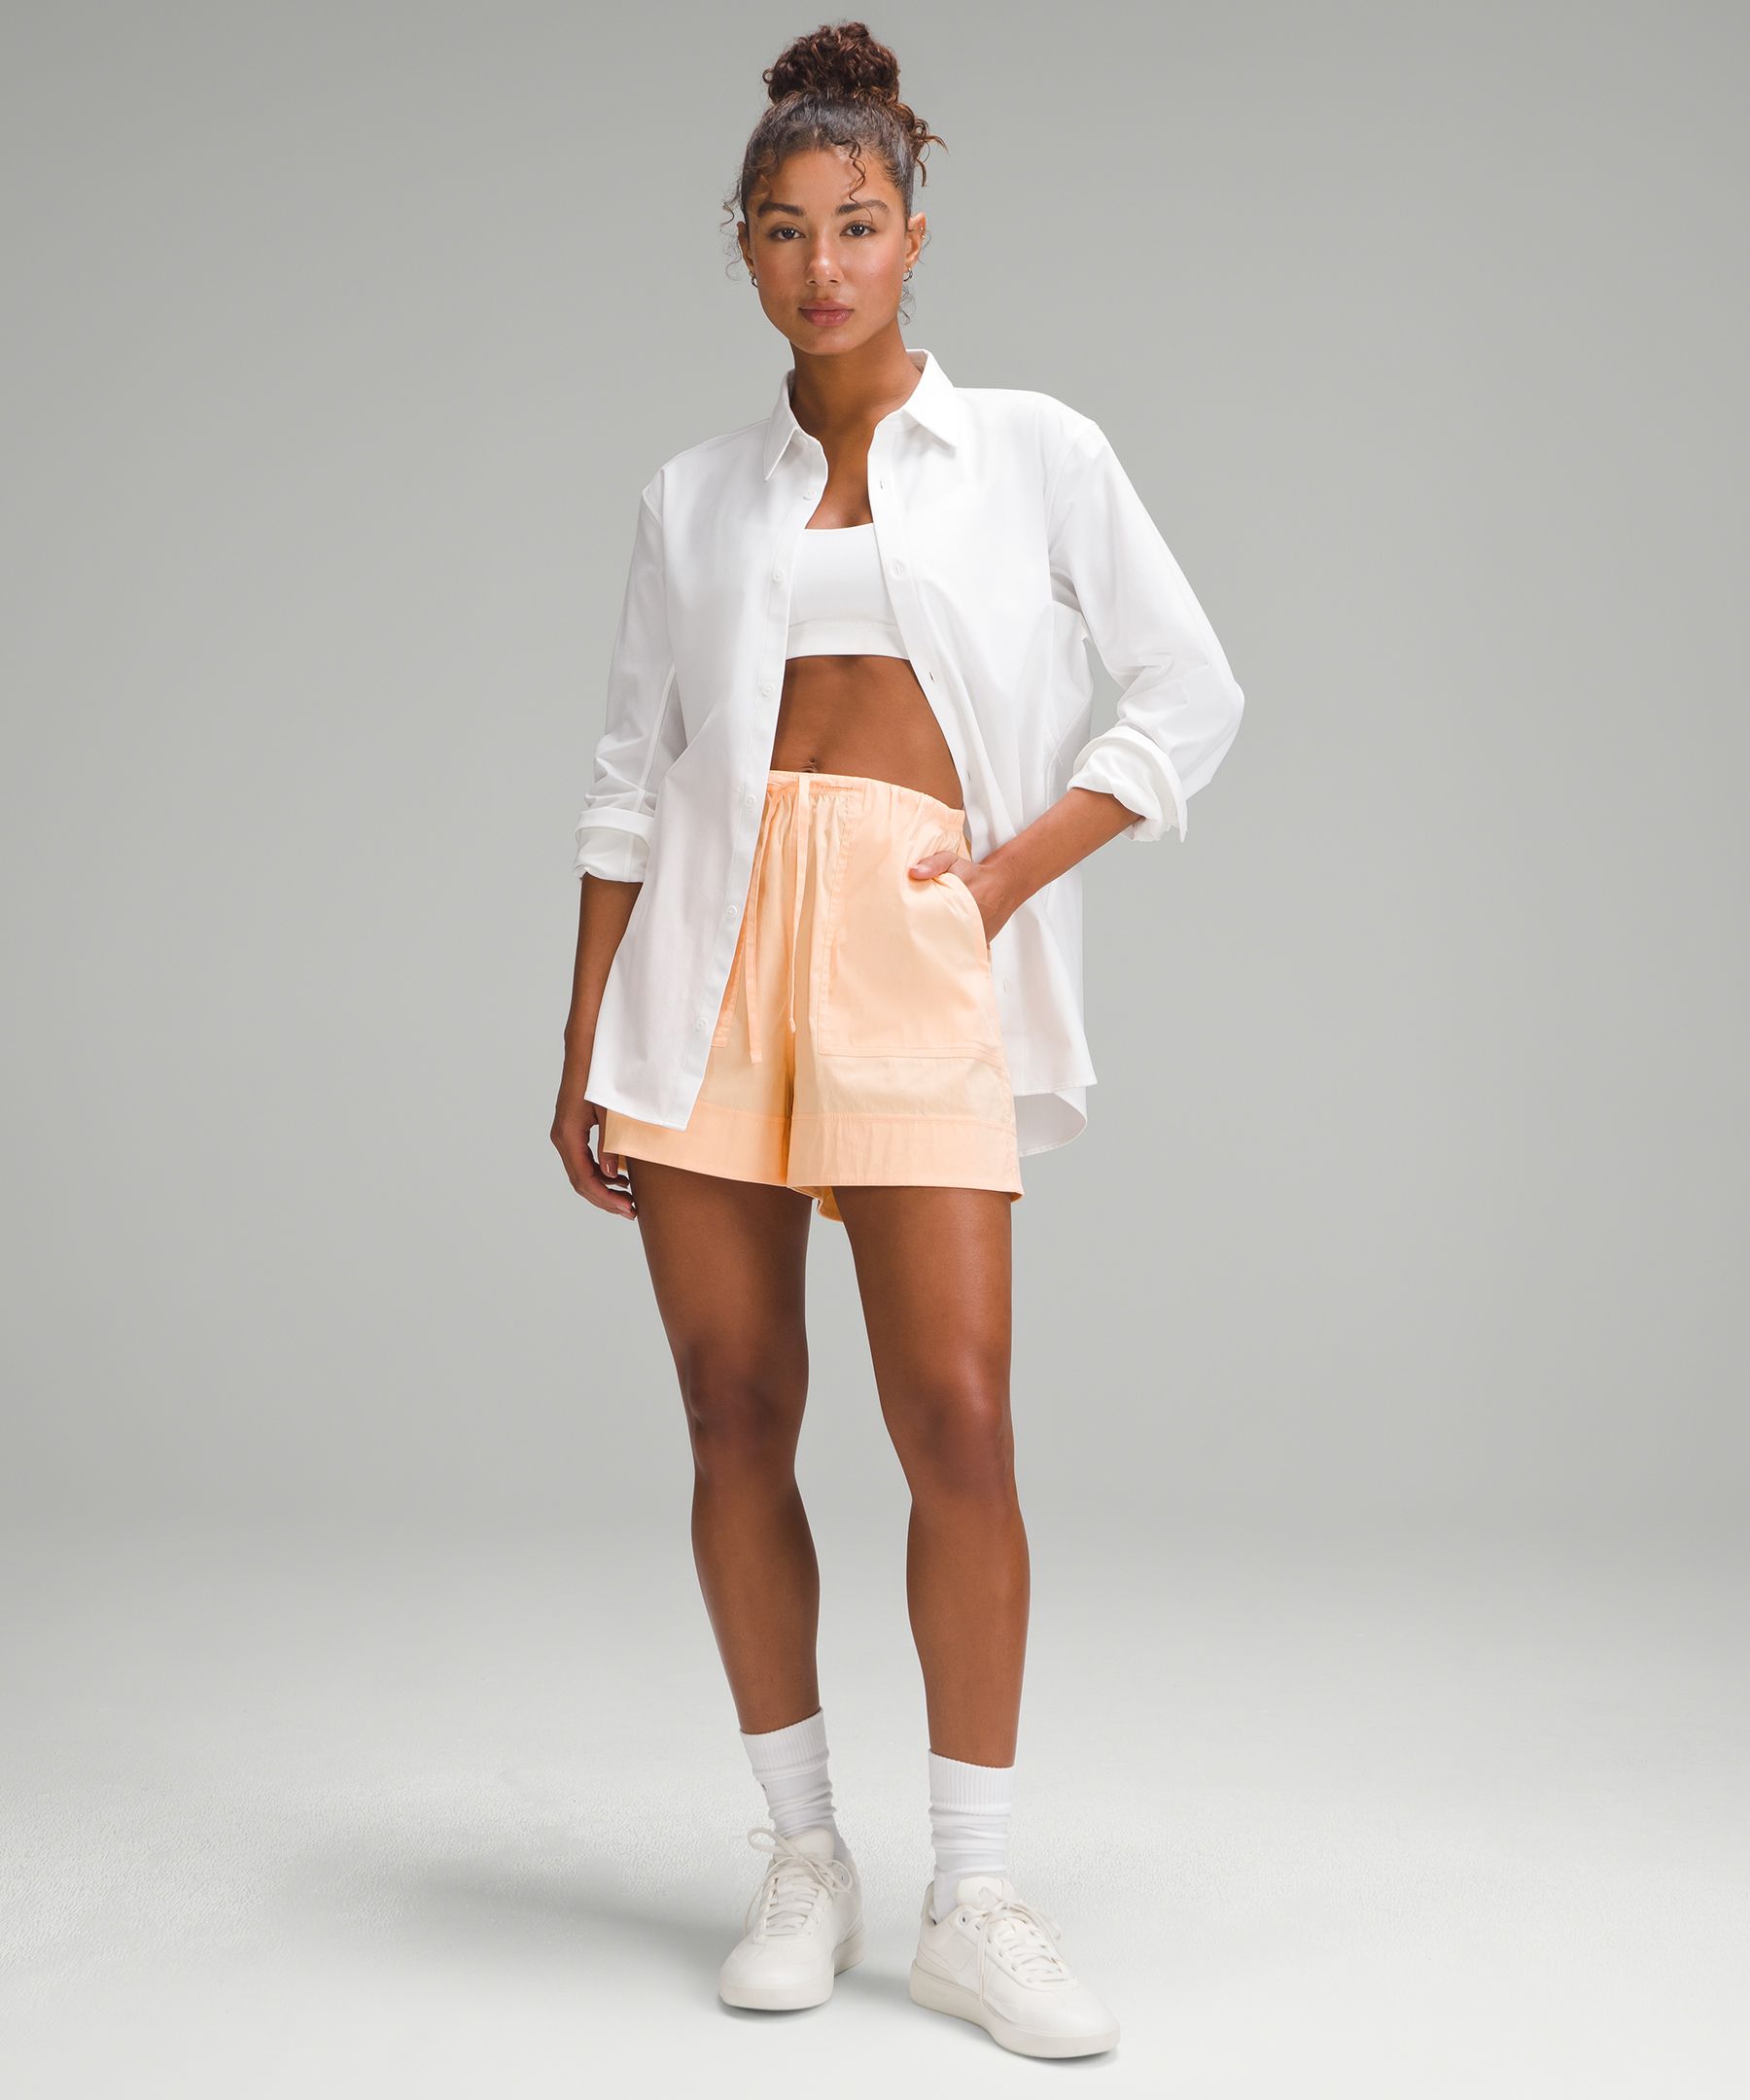 Cotton-Blend Poplin High-Rise Short 4" | Women's Shorts